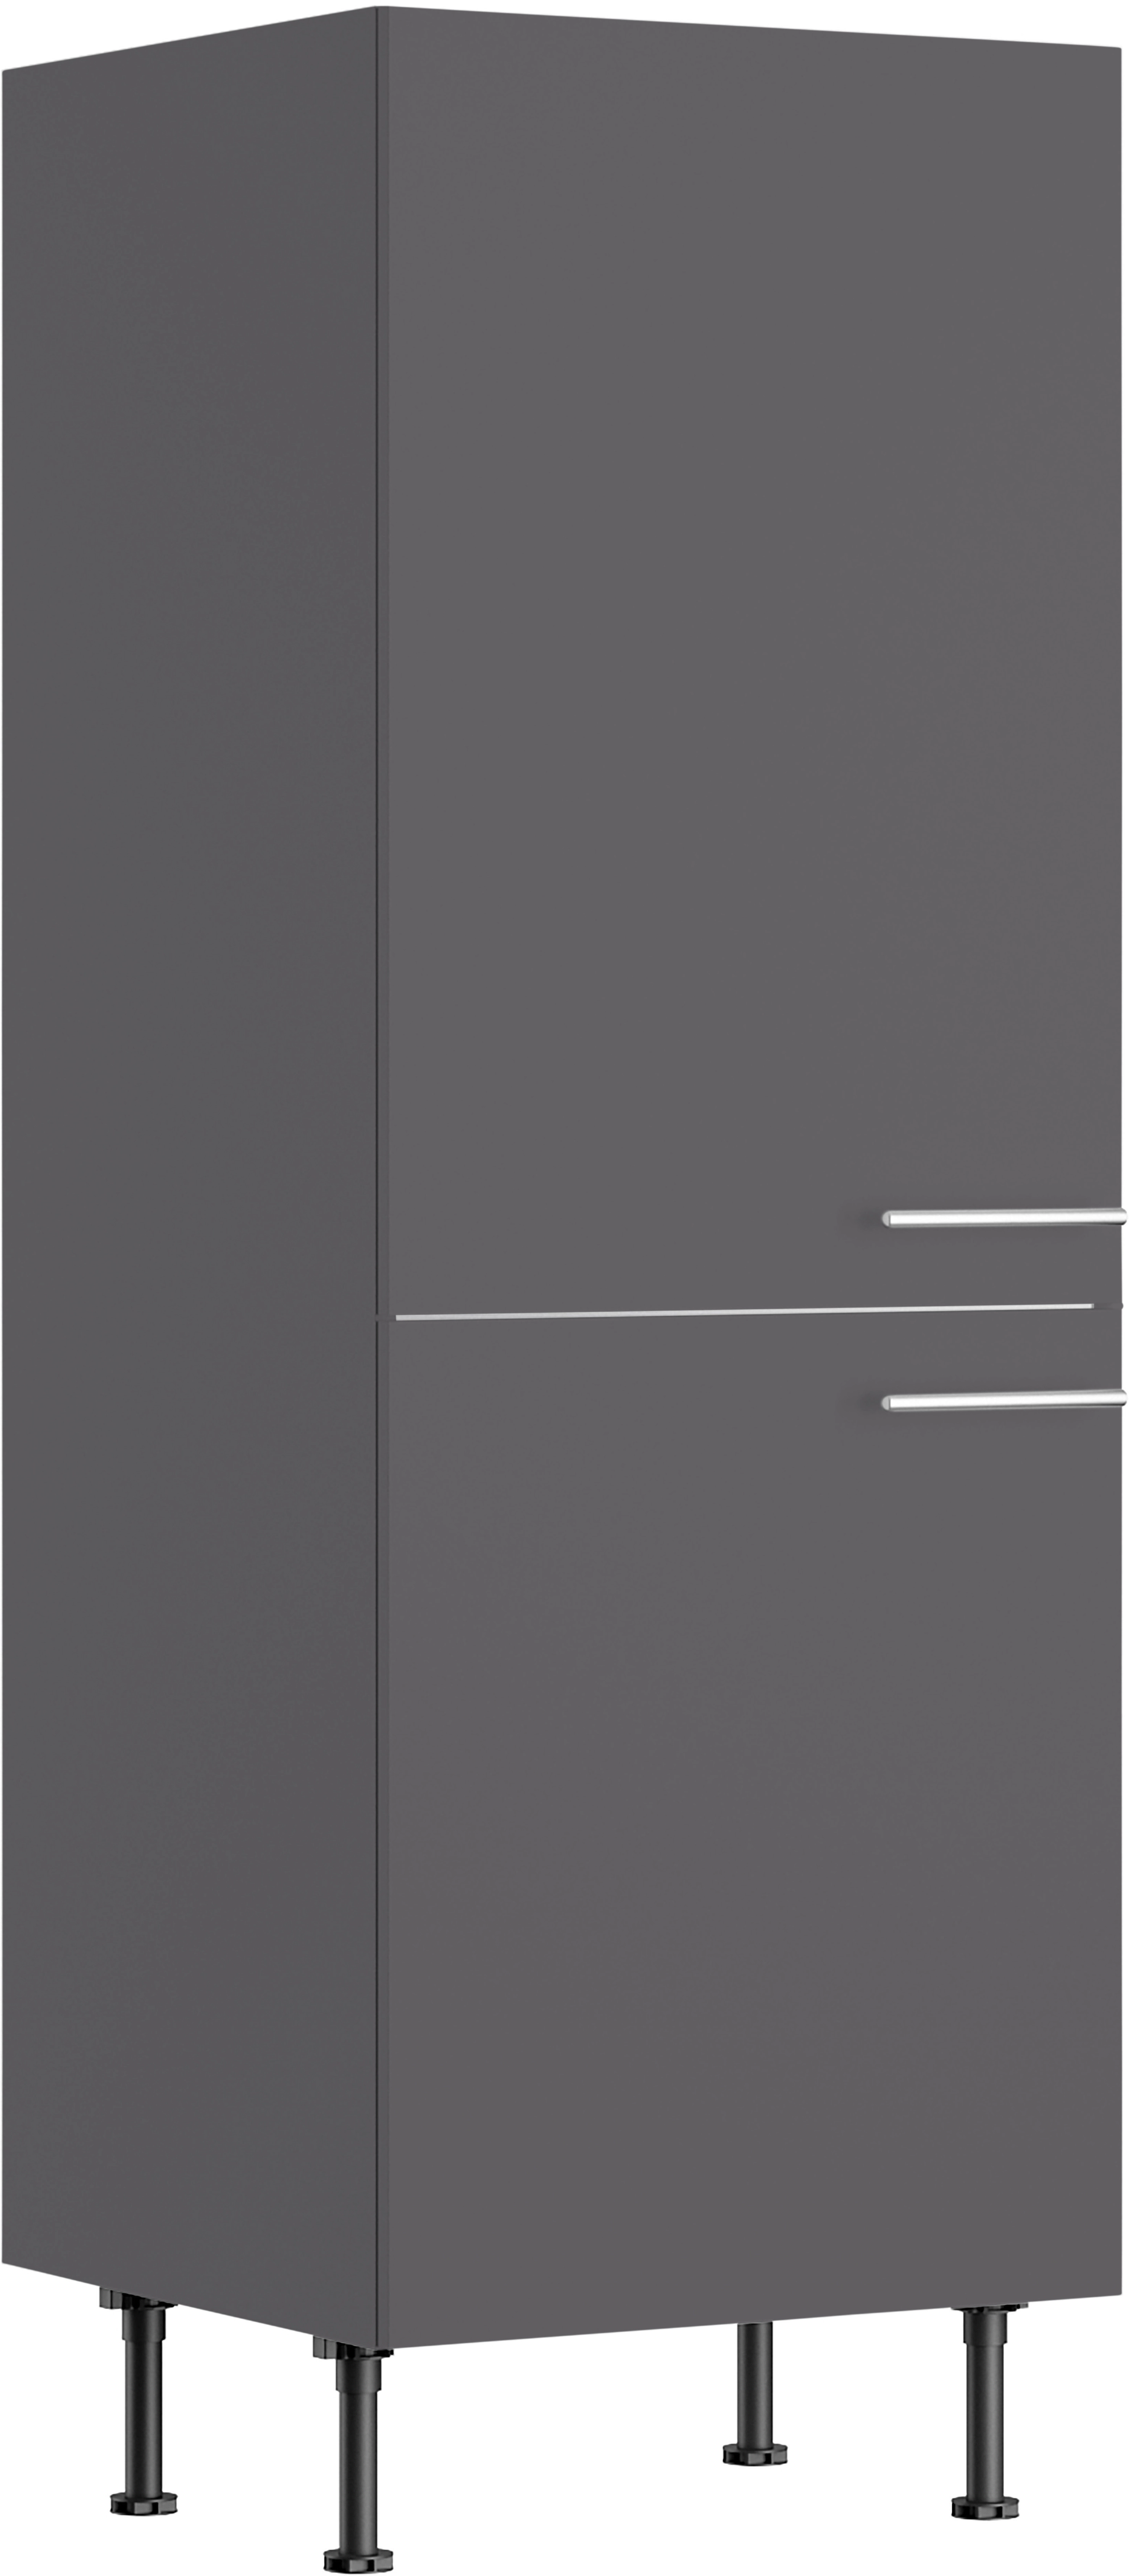 60 cm für kaufen Anthrazit Kühlschrank Matt Optifit Ingvar420 OBI bei Midischrank